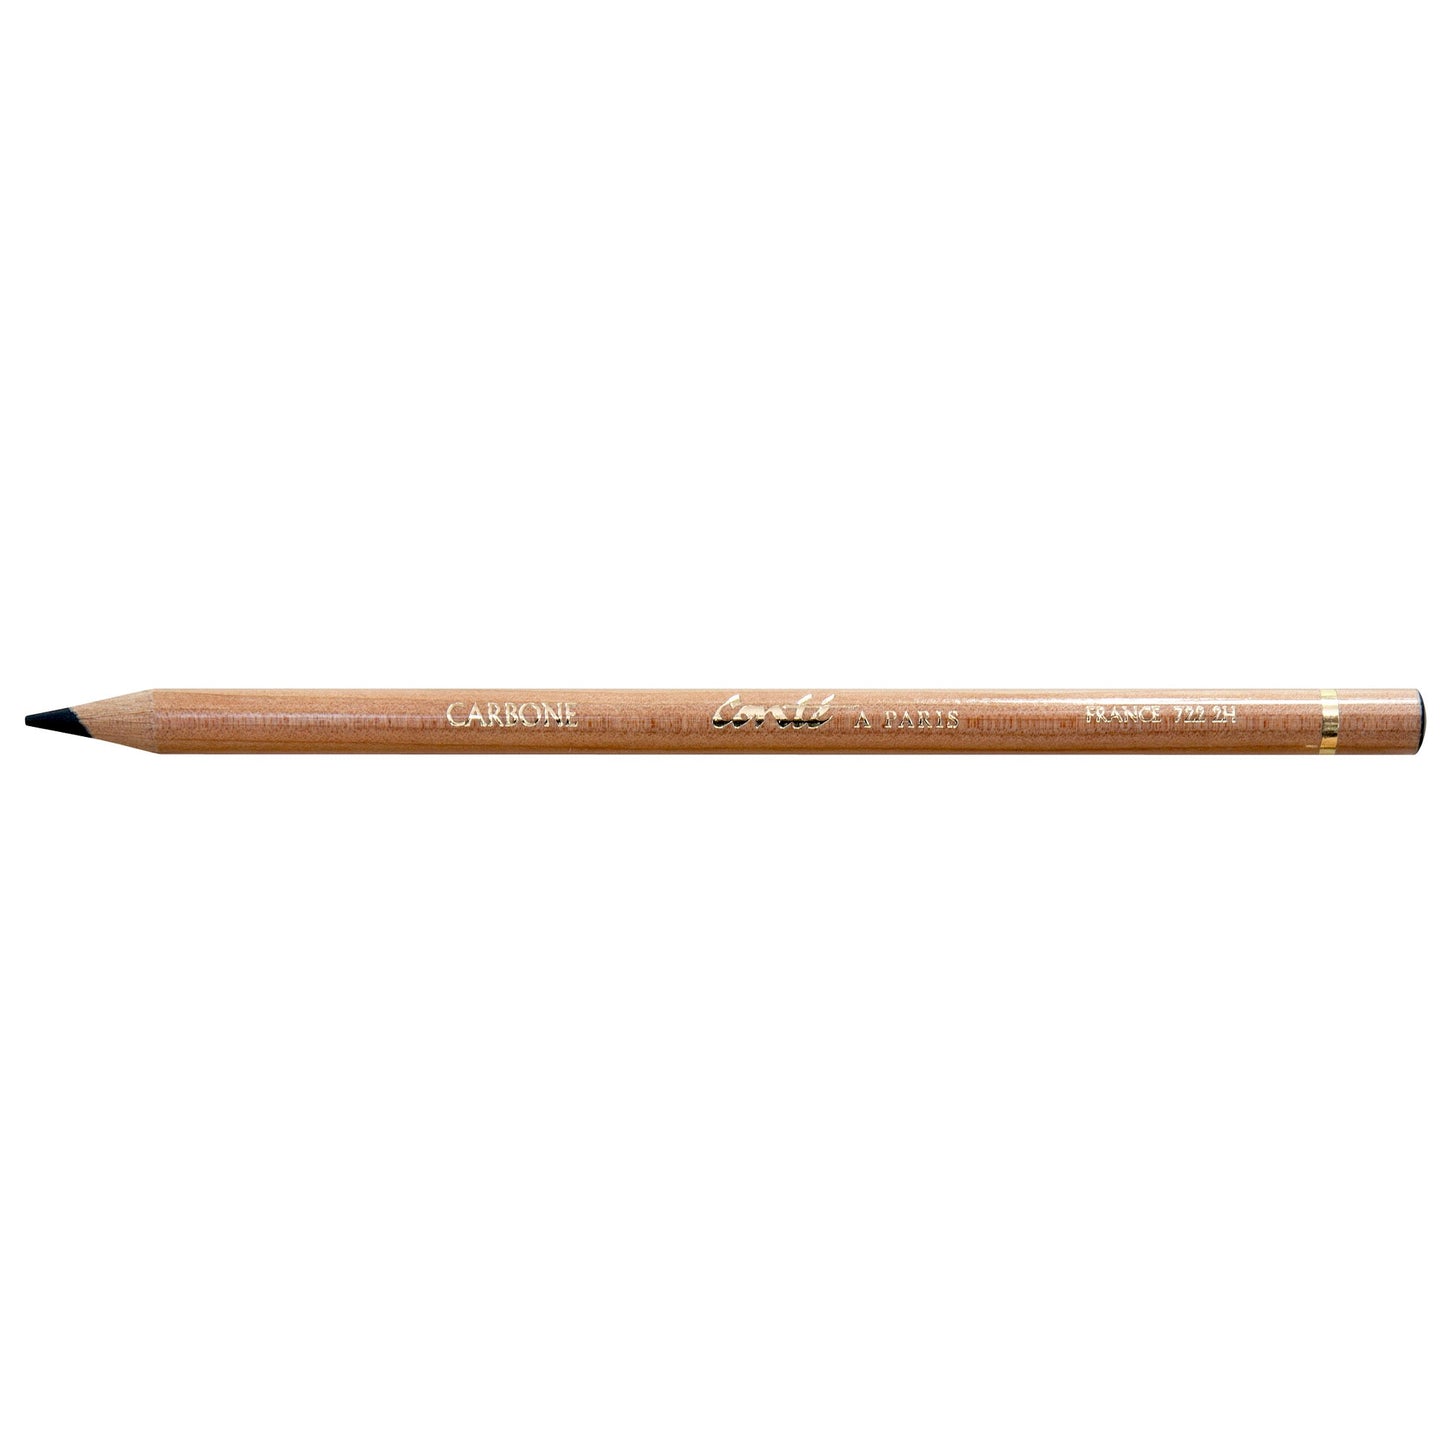 Conte Sketching Pencil Carbon 722 2H - theartshop.com.au